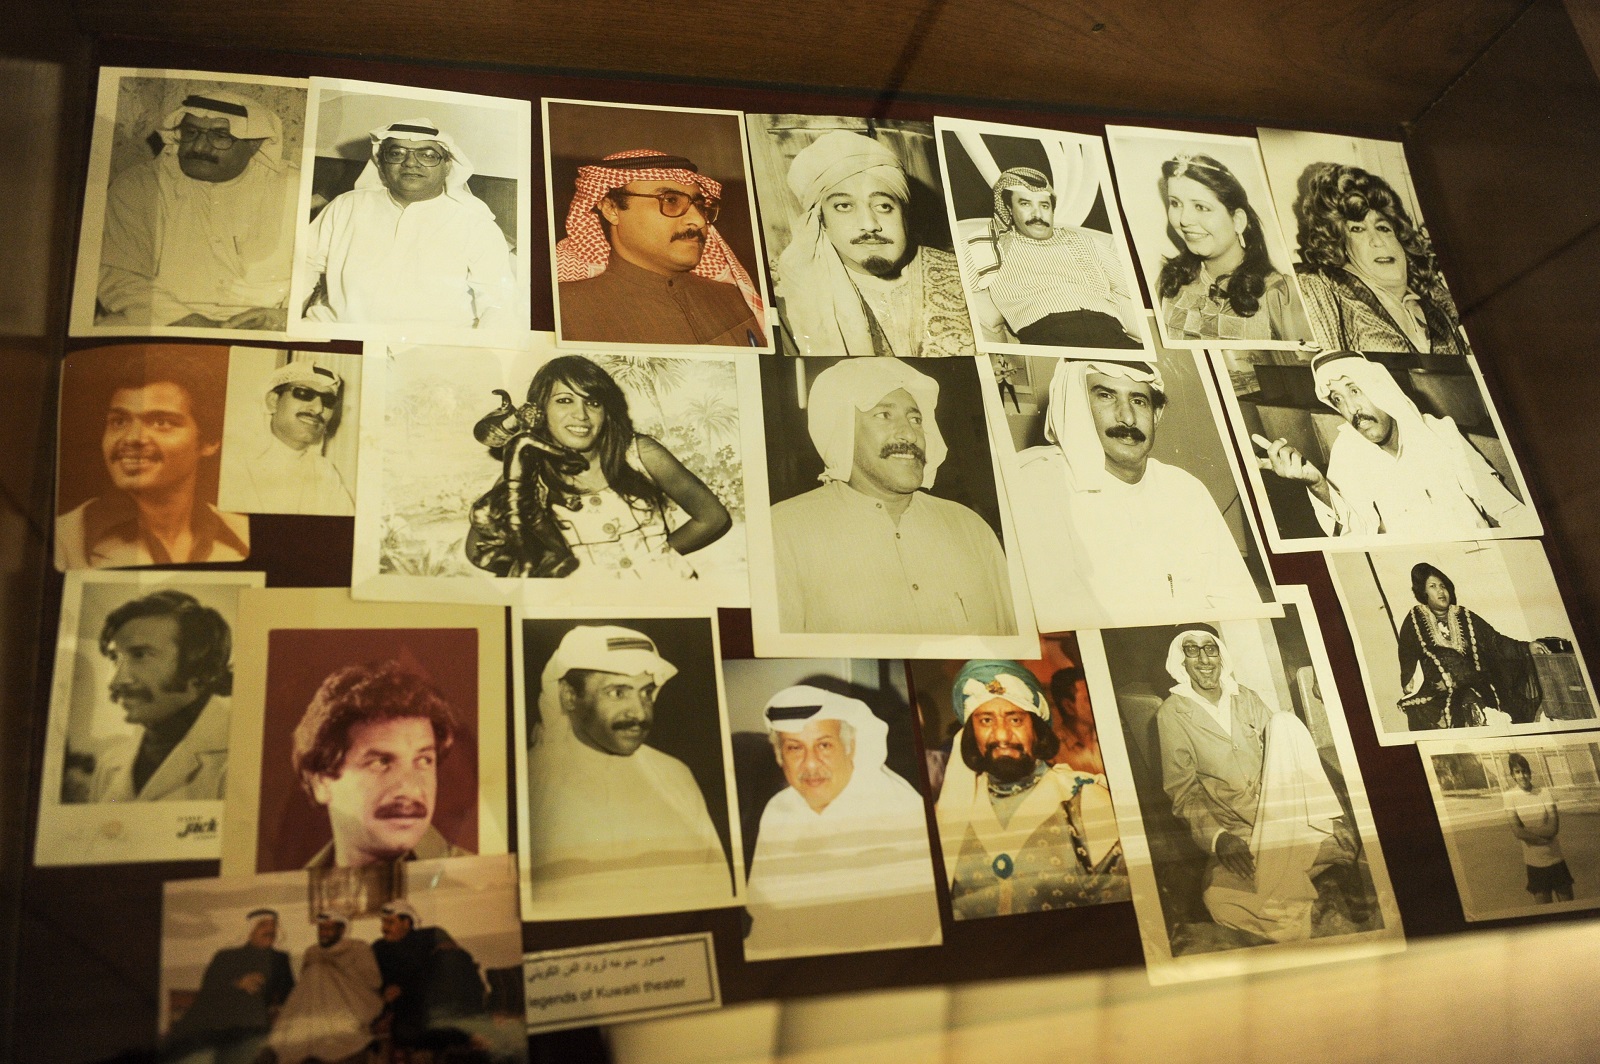 مجموعة مختارة من الصور لاشهر فنانين المسرح في الكويت